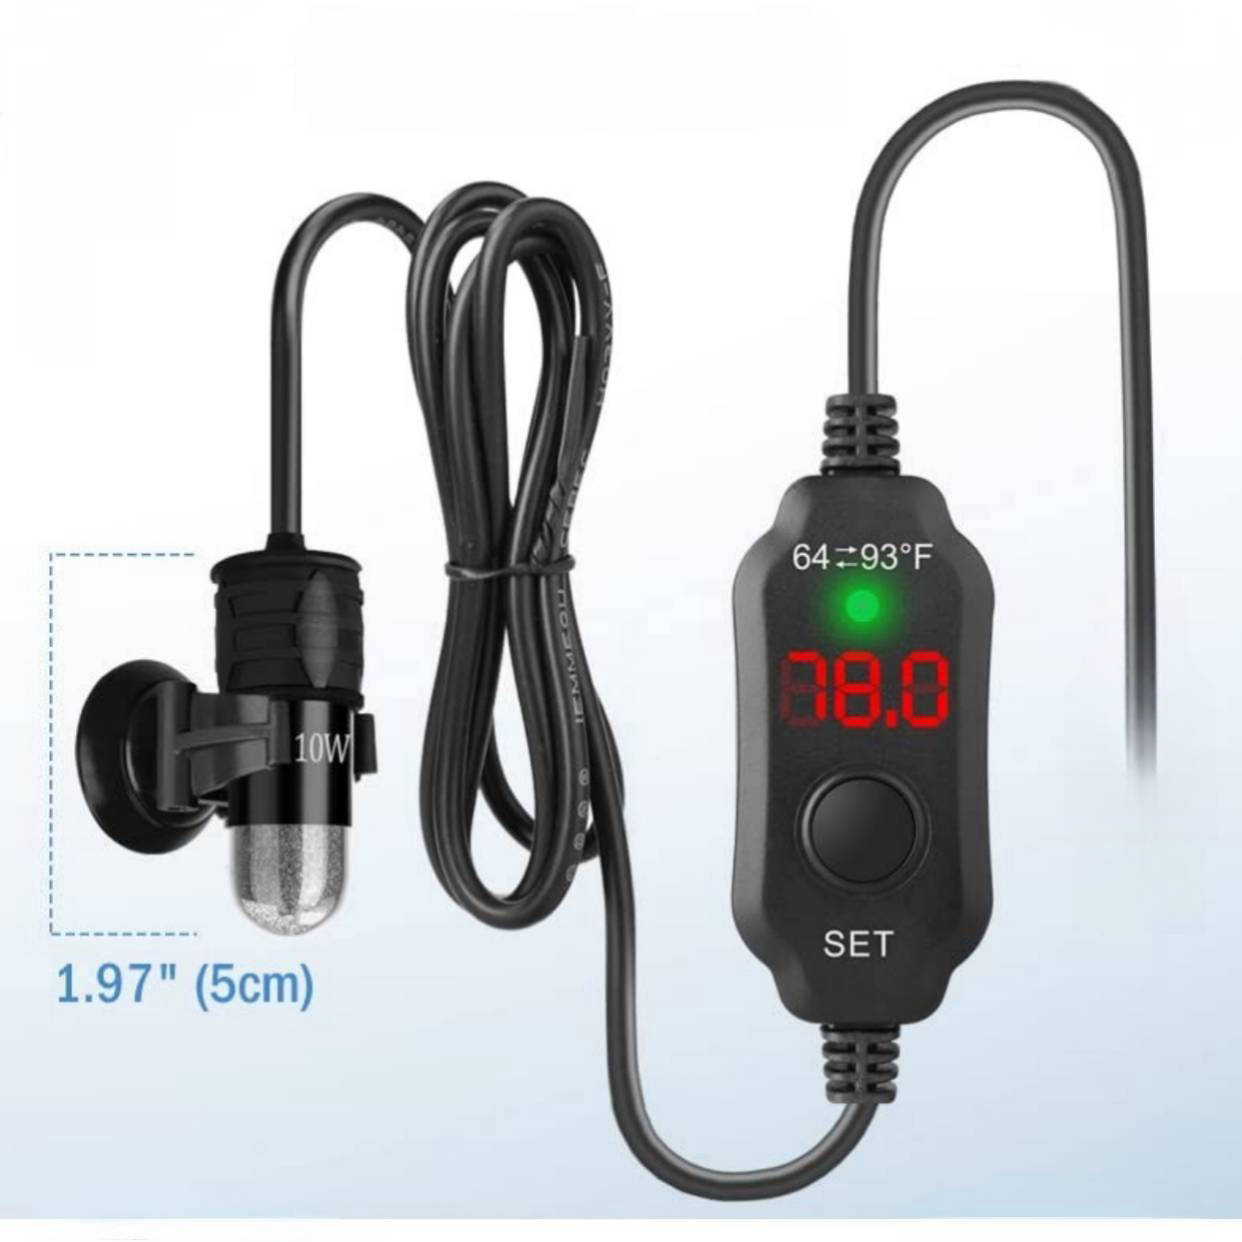 30 Watt Adjustable Mini Aquarium Heater for 2-4 Gallon Fish Tank | Digital Display | AC Wall Plug-In